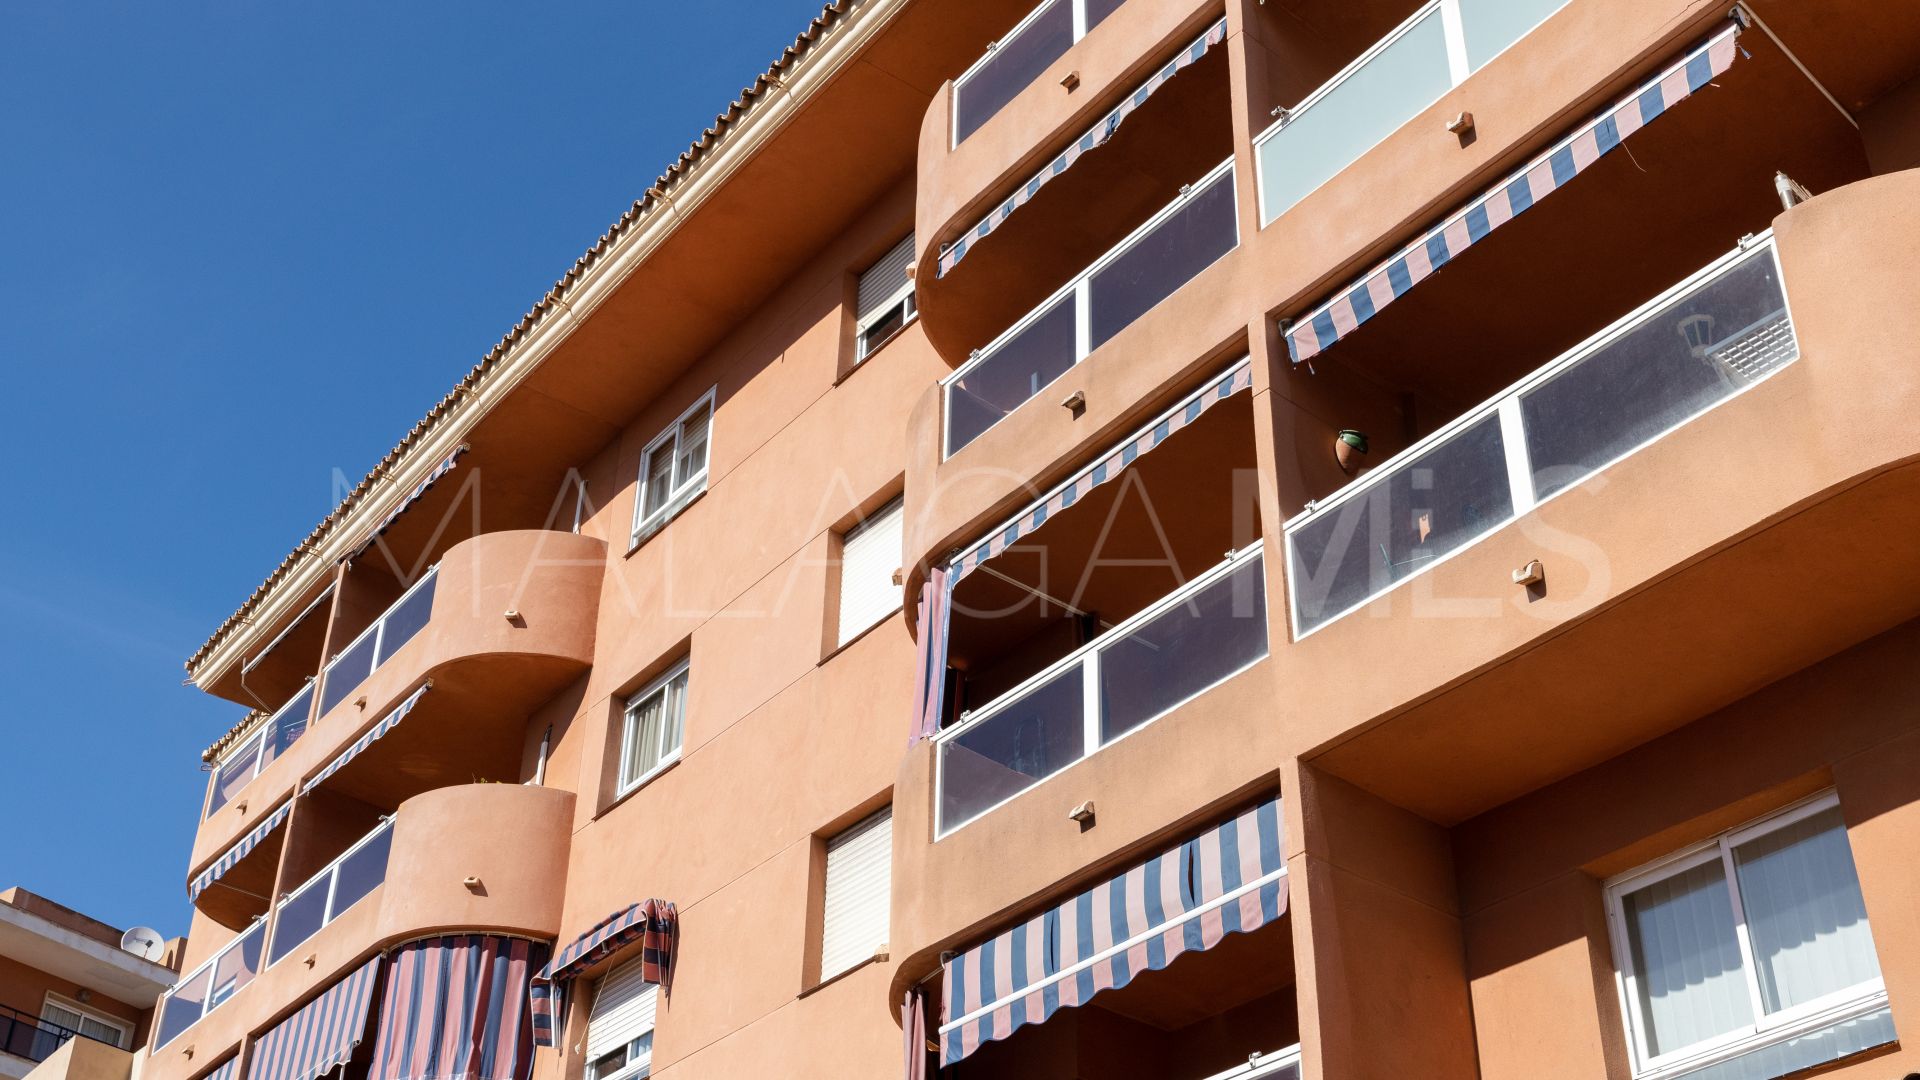 Lägenhet for sale in Fuengirola Centro